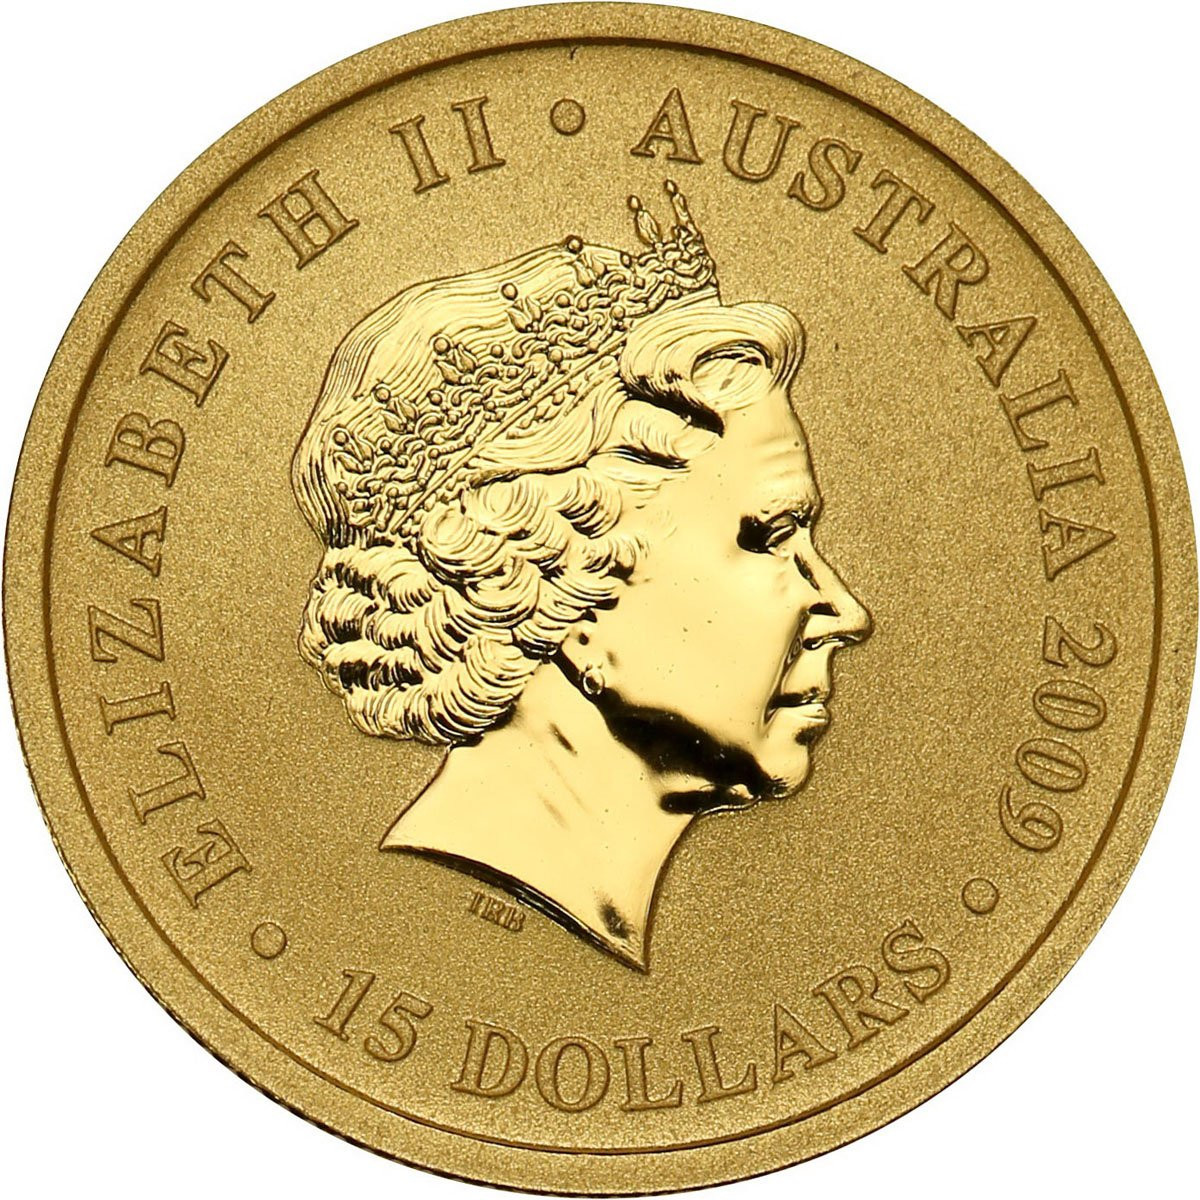 Australia. 15 dolarów 2009 Kangur - 1/10 uncji złota